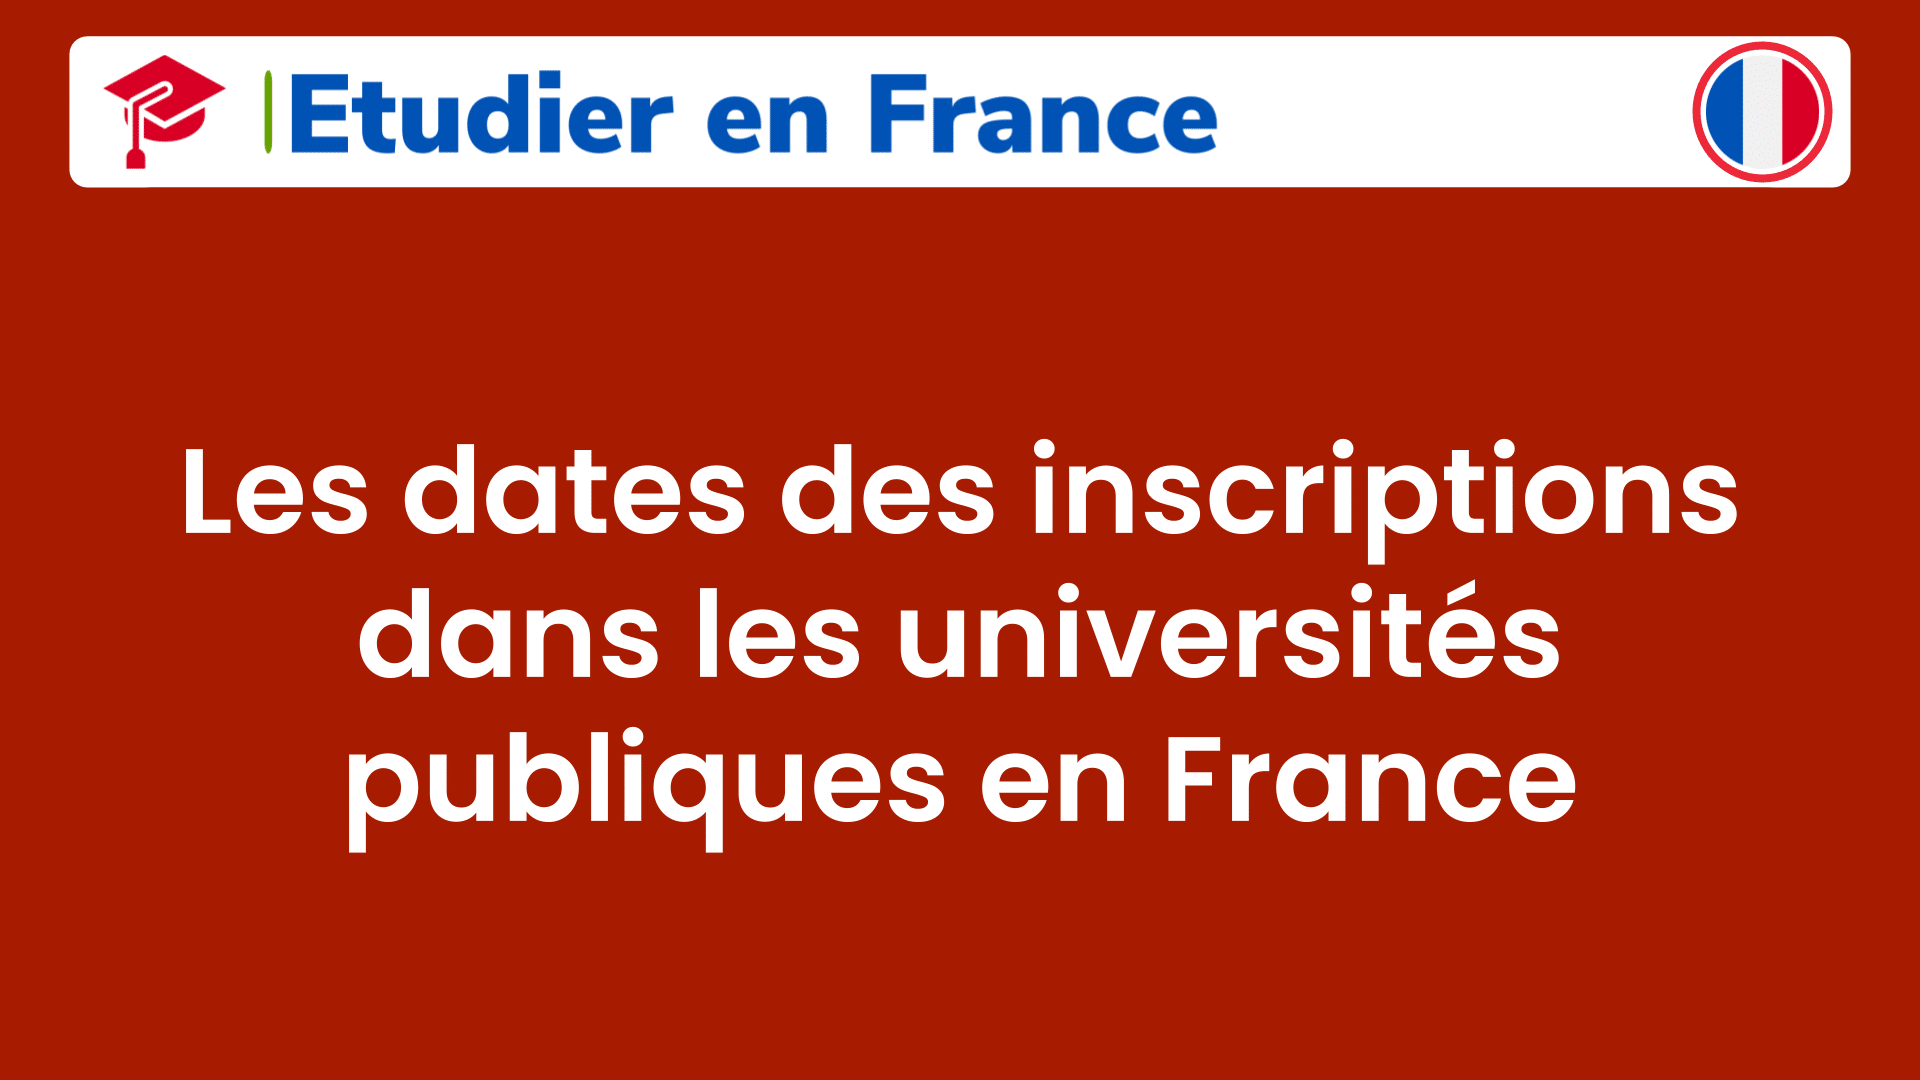 Les dates des inscriptions dans les universités publiques en France